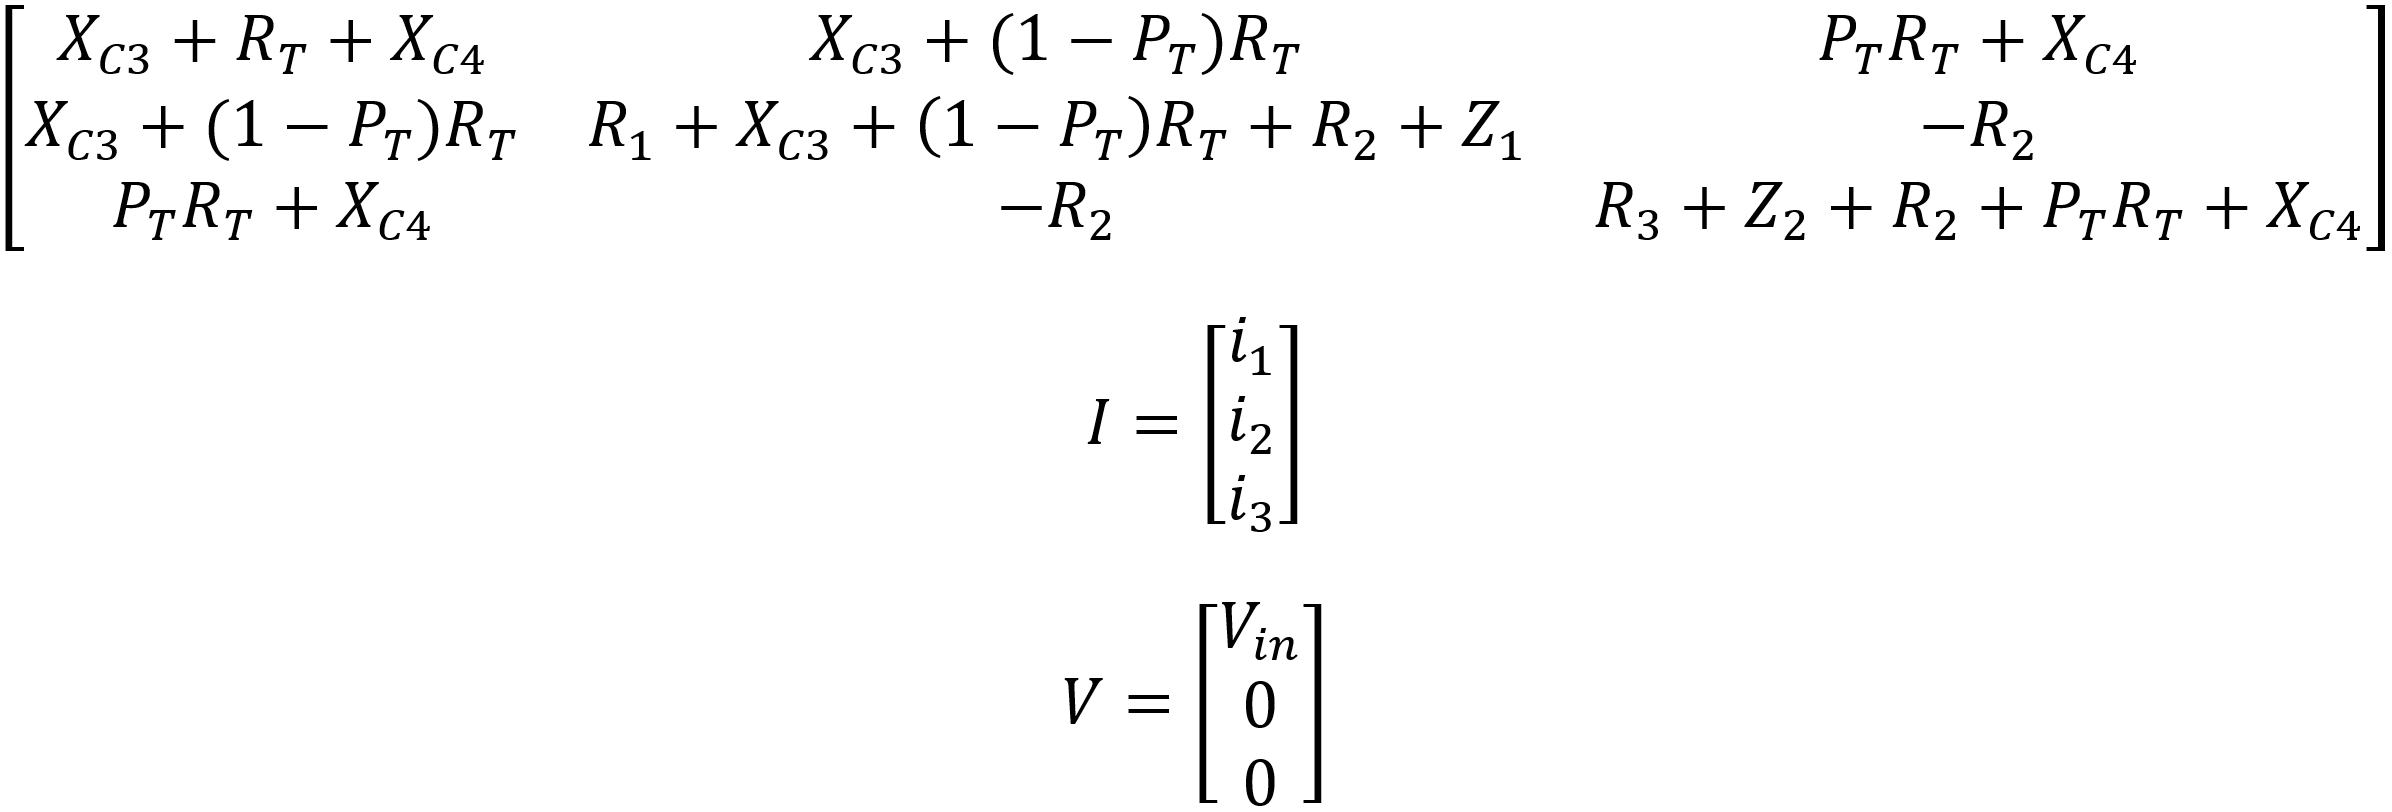 Tone Stack Loop Equations in Matrix Form